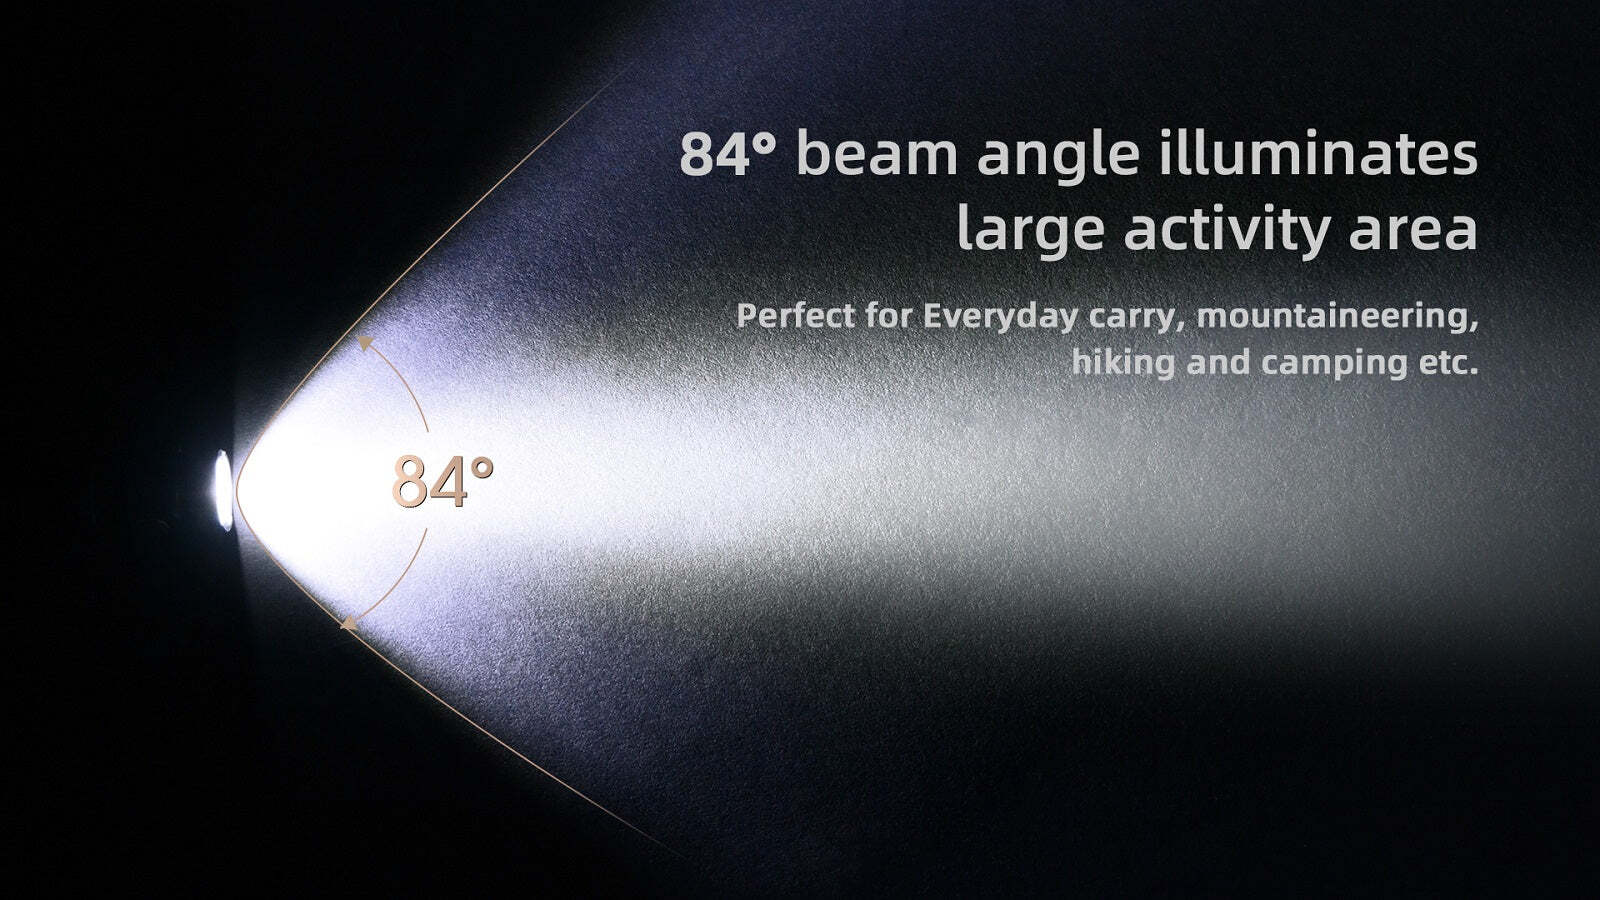 Wuben E05  XP-L LED 900 Lumens EDC Flashlight